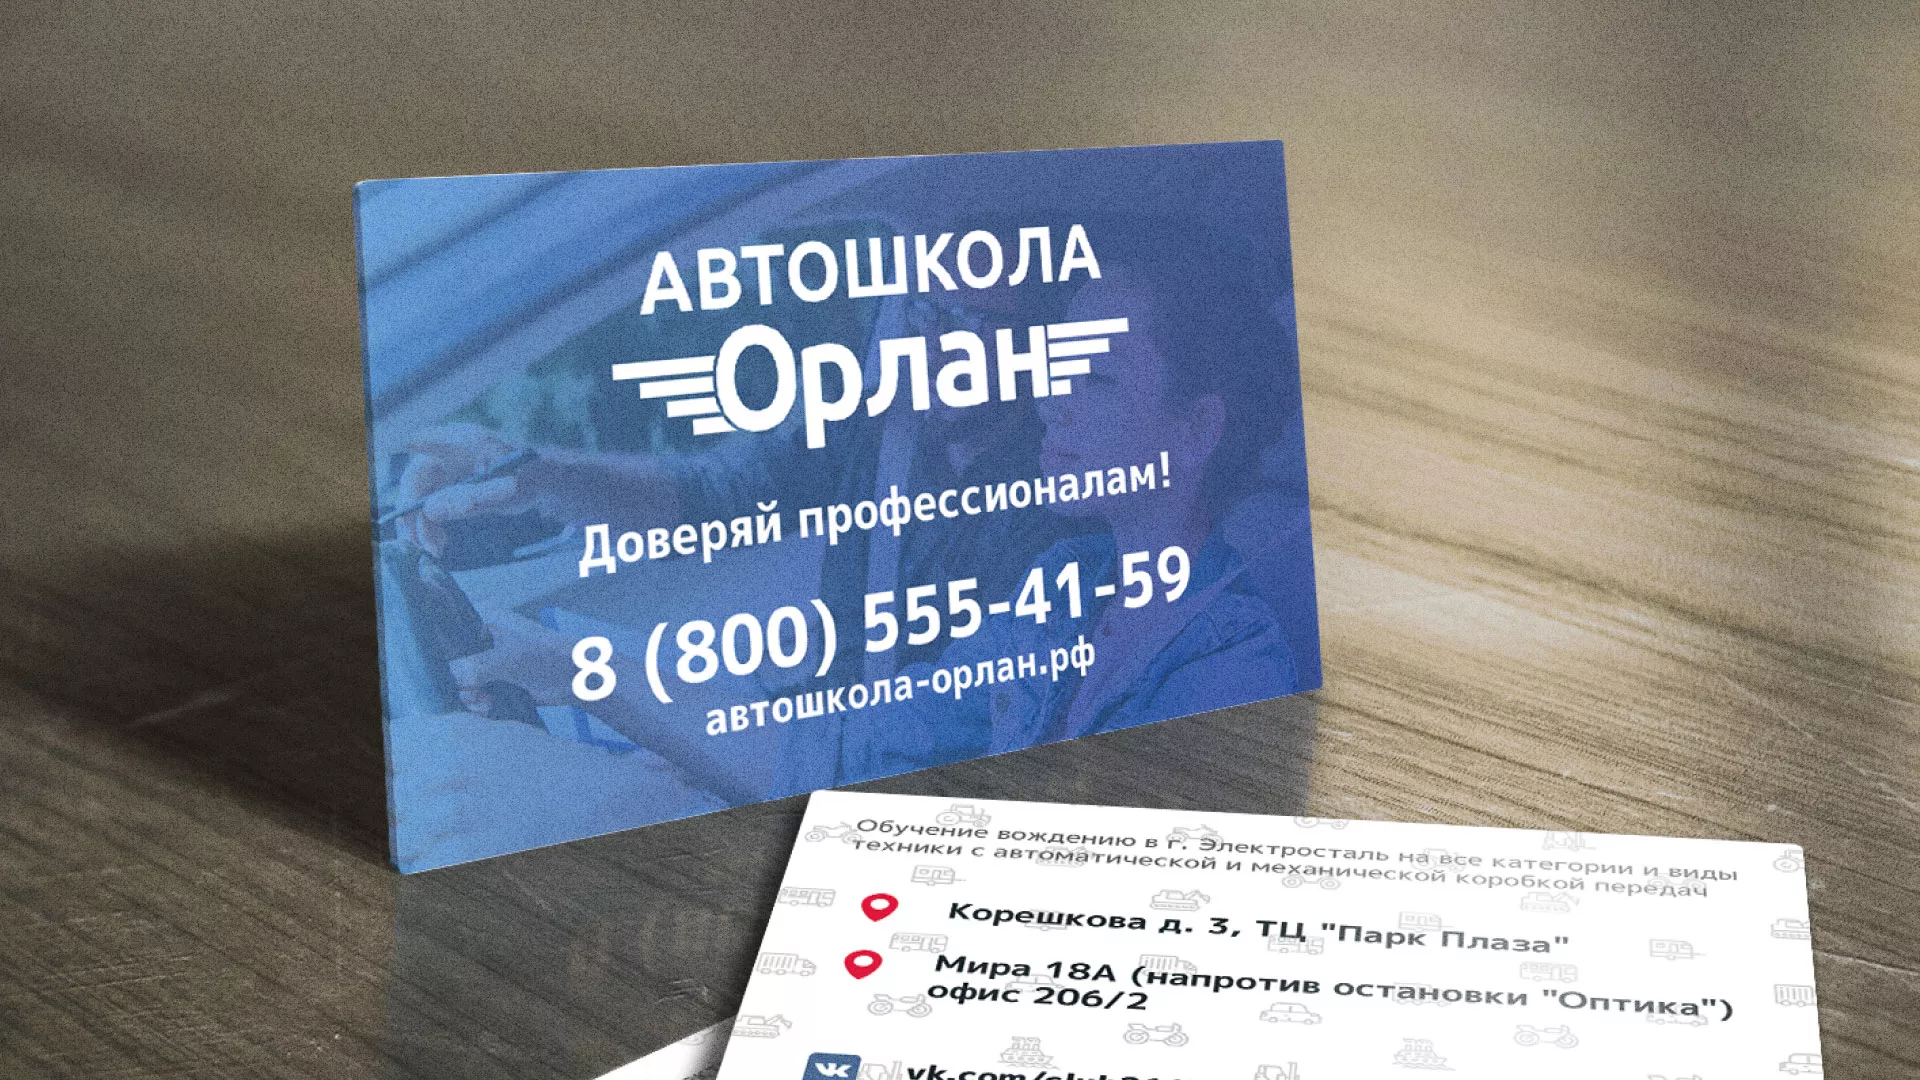 Дизайн рекламных визиток для автошколы «Орлан» в Каменск-Шахтинске